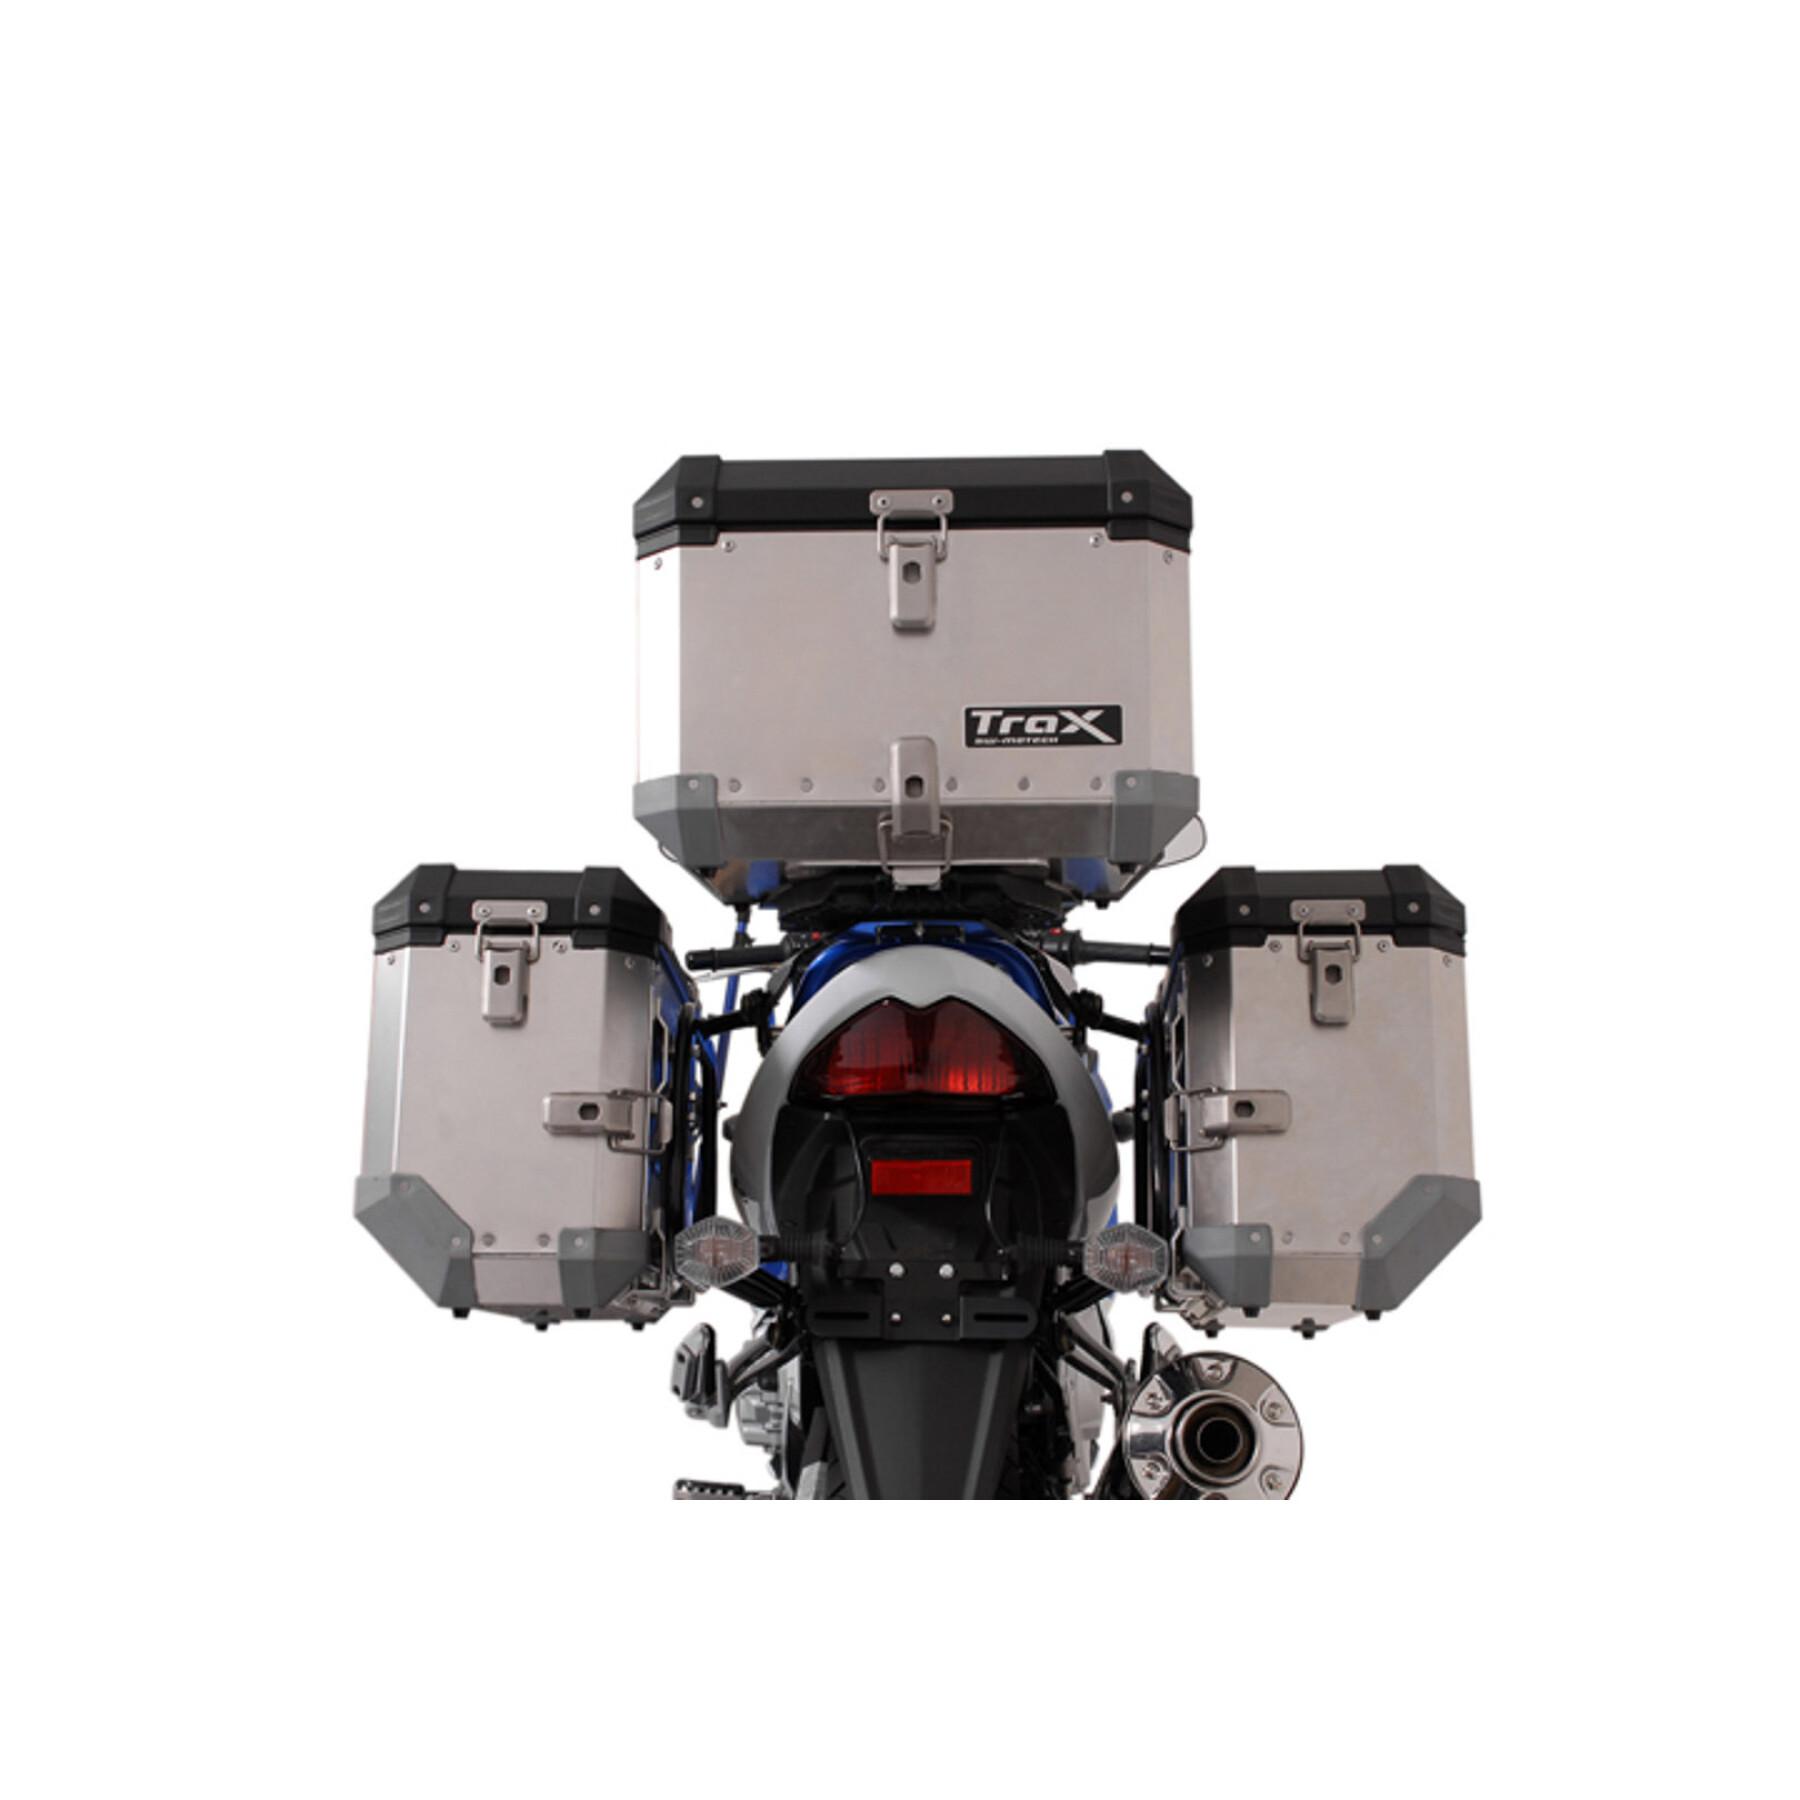 Motorcycle side case support Sw-Motech Evo. Suzuki Gsf650/650S/1200/1250,Gsx650/1250F